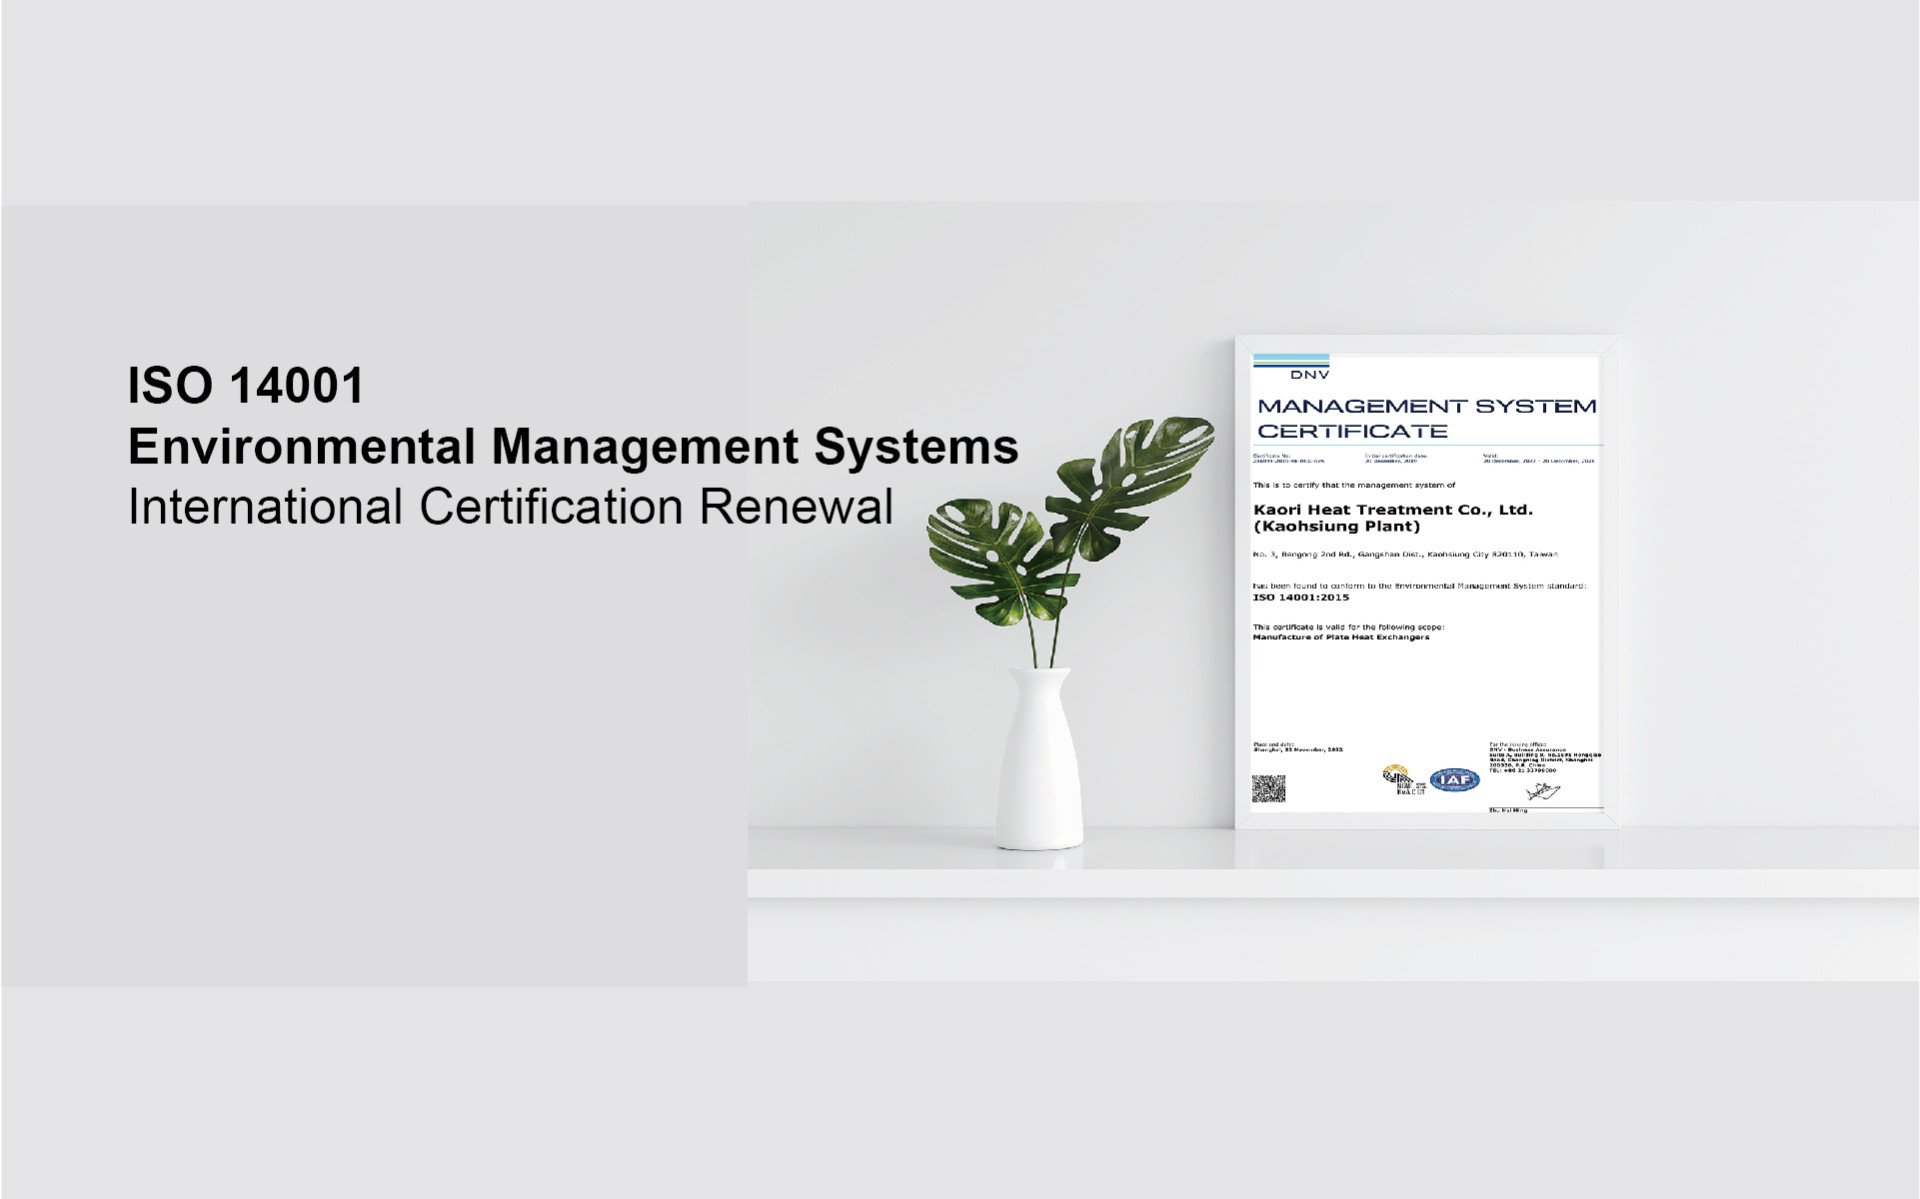 高雄廠通過「ISO 14001環境管理系統」國際認證續評